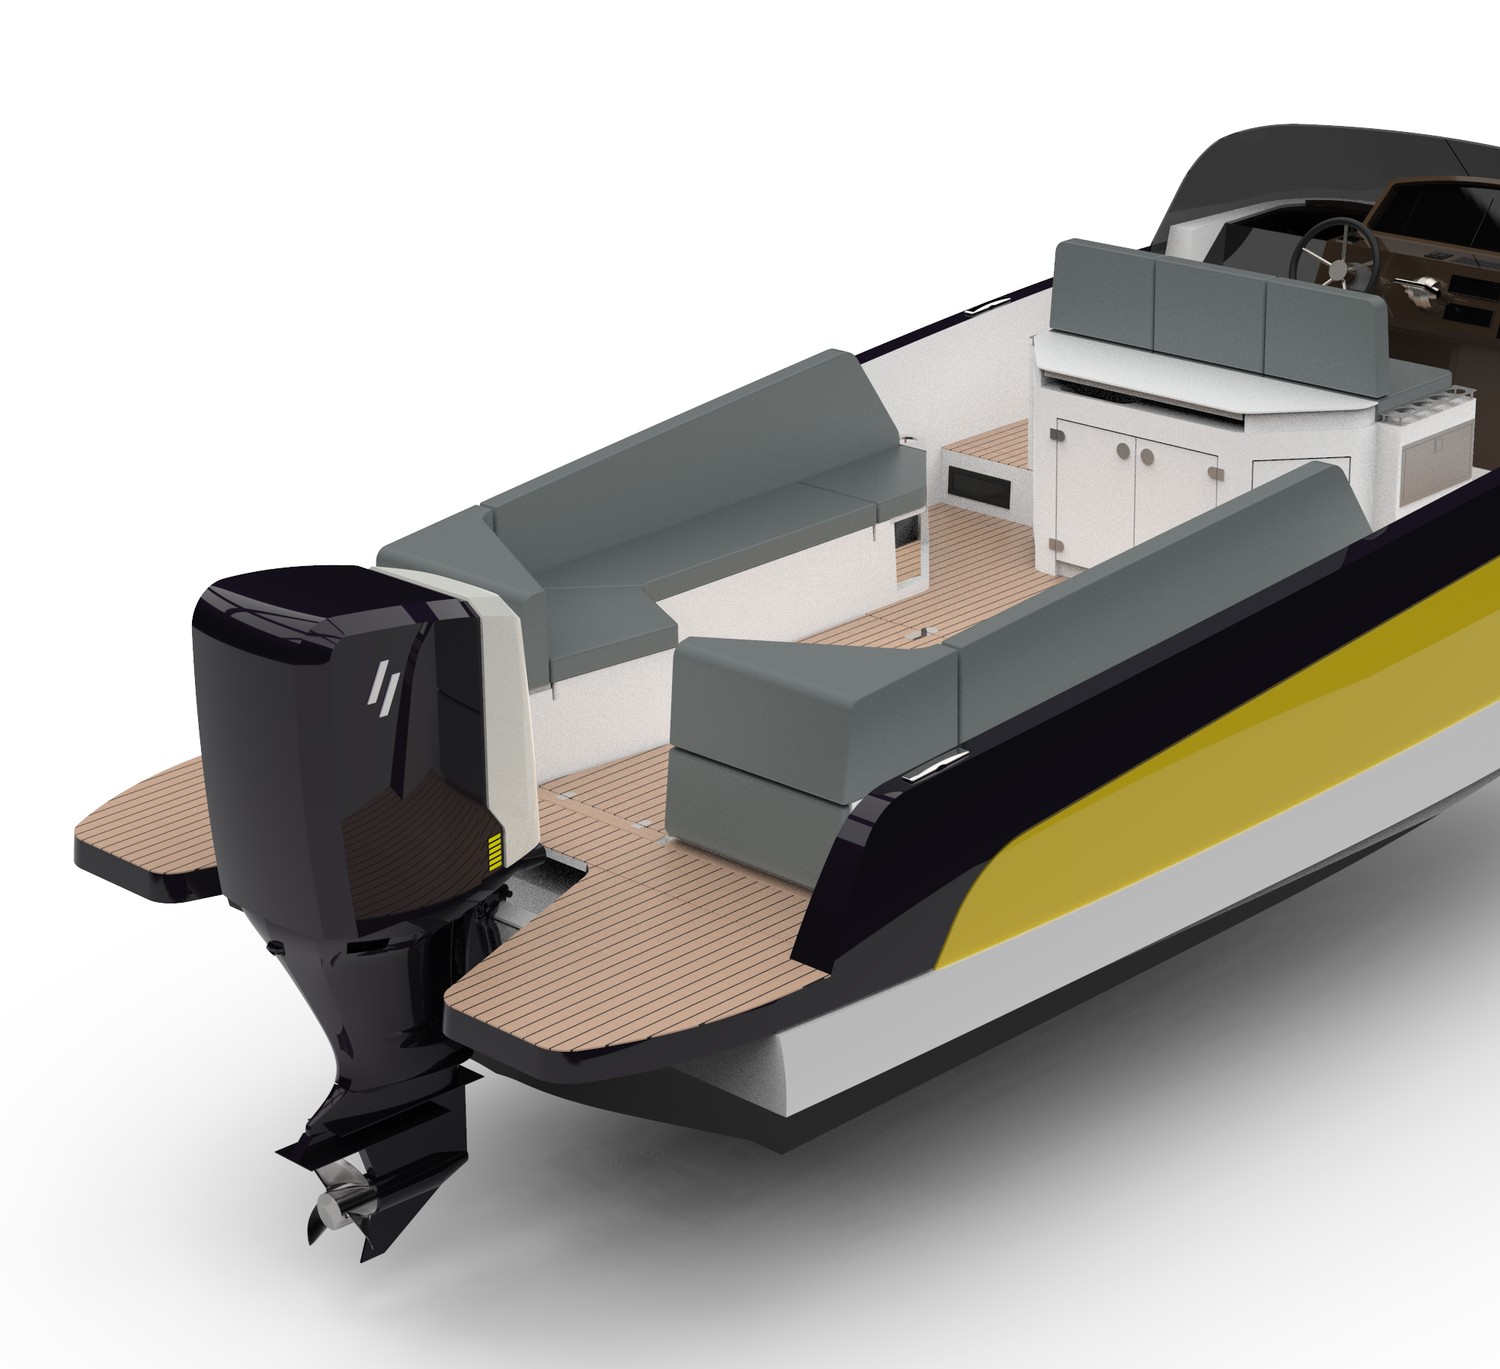 Diseño sostenible - Zephyr Boats ▷ Z800 Eco